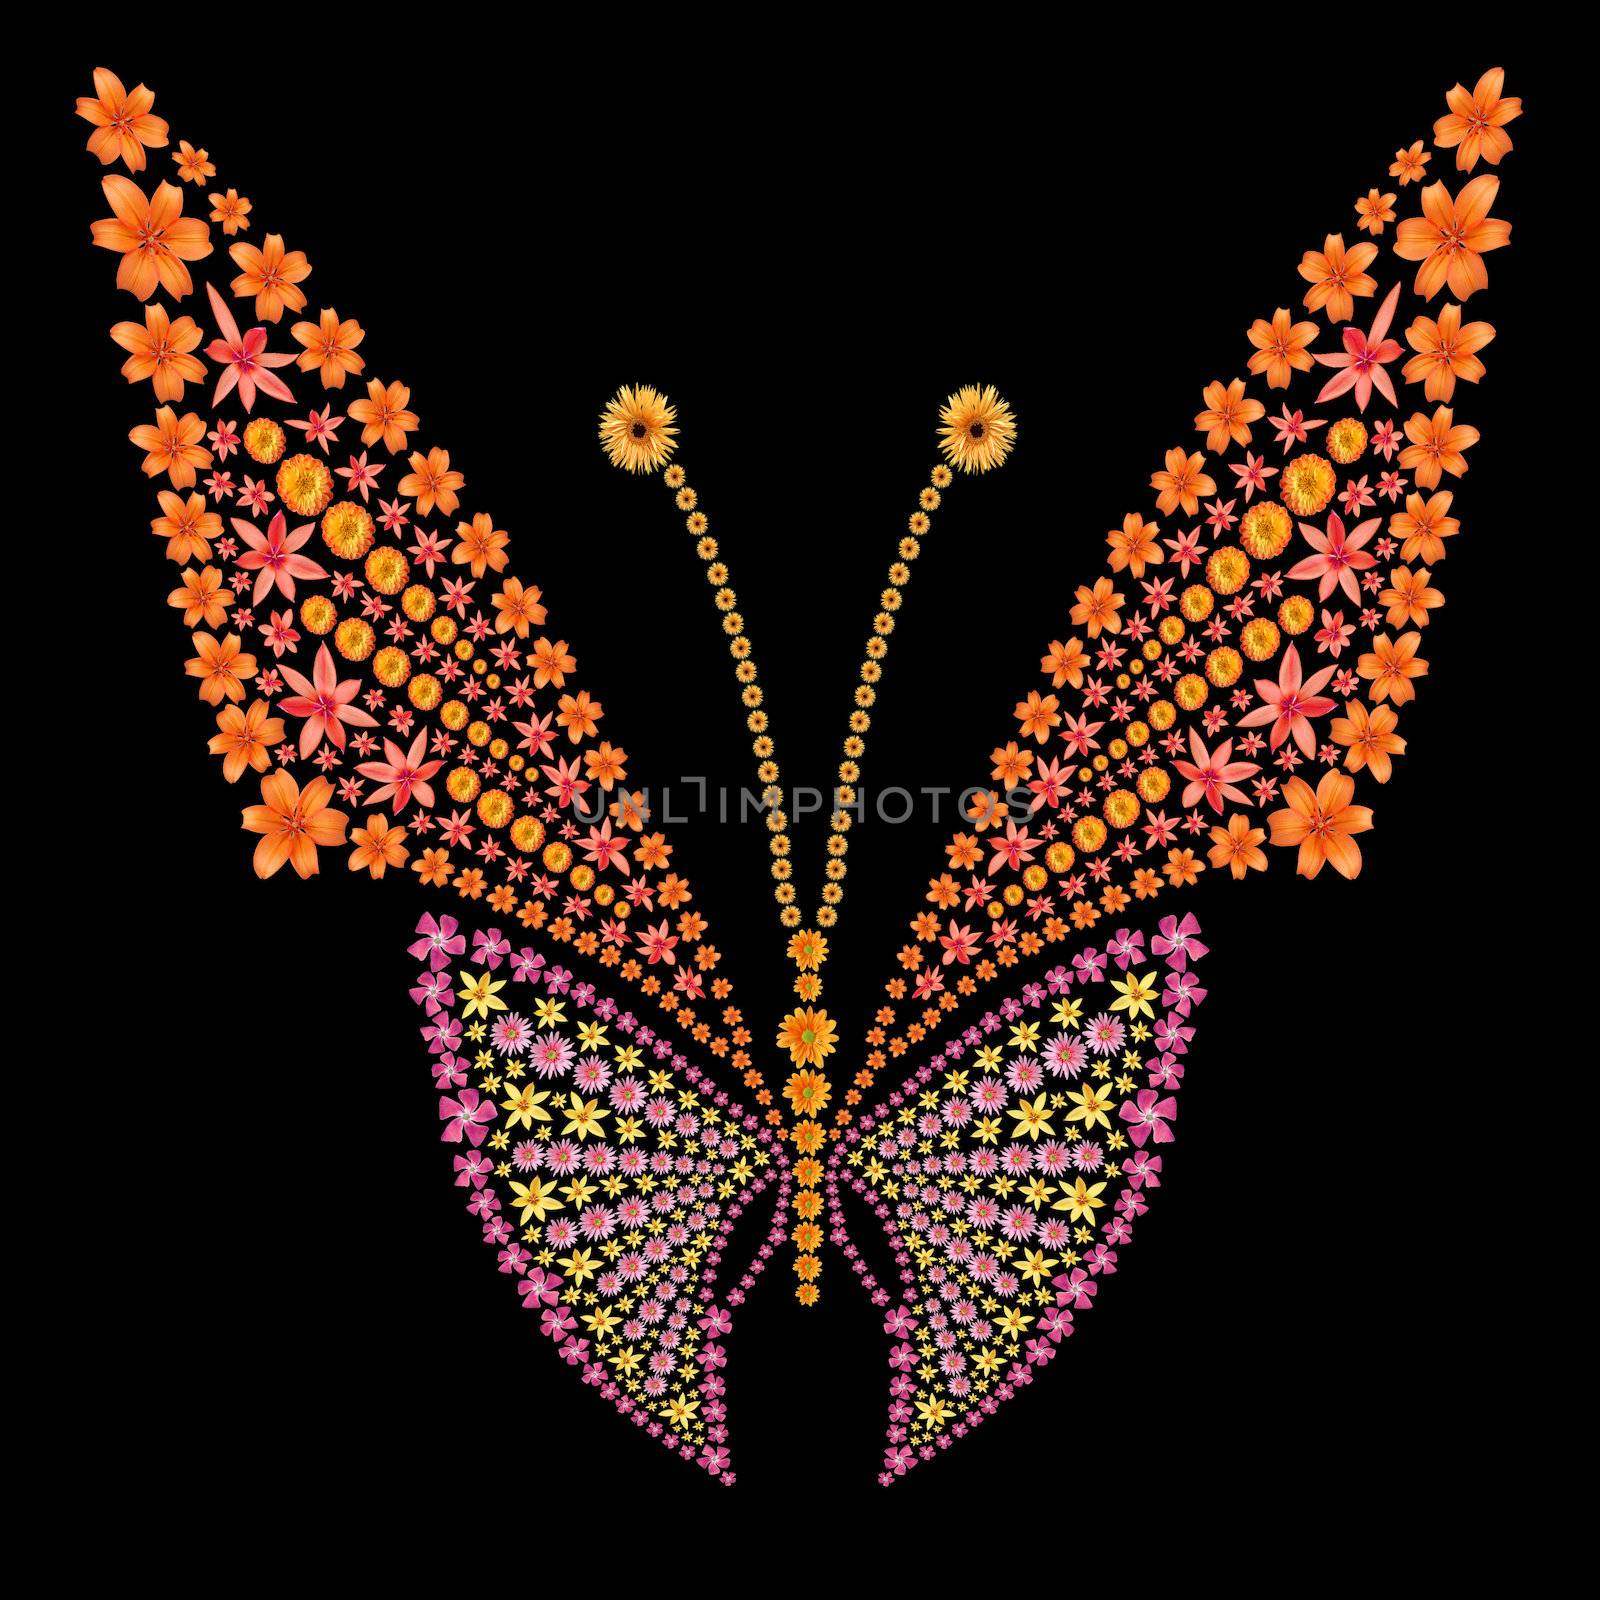 Flowers butterfly silhouette by palinchak